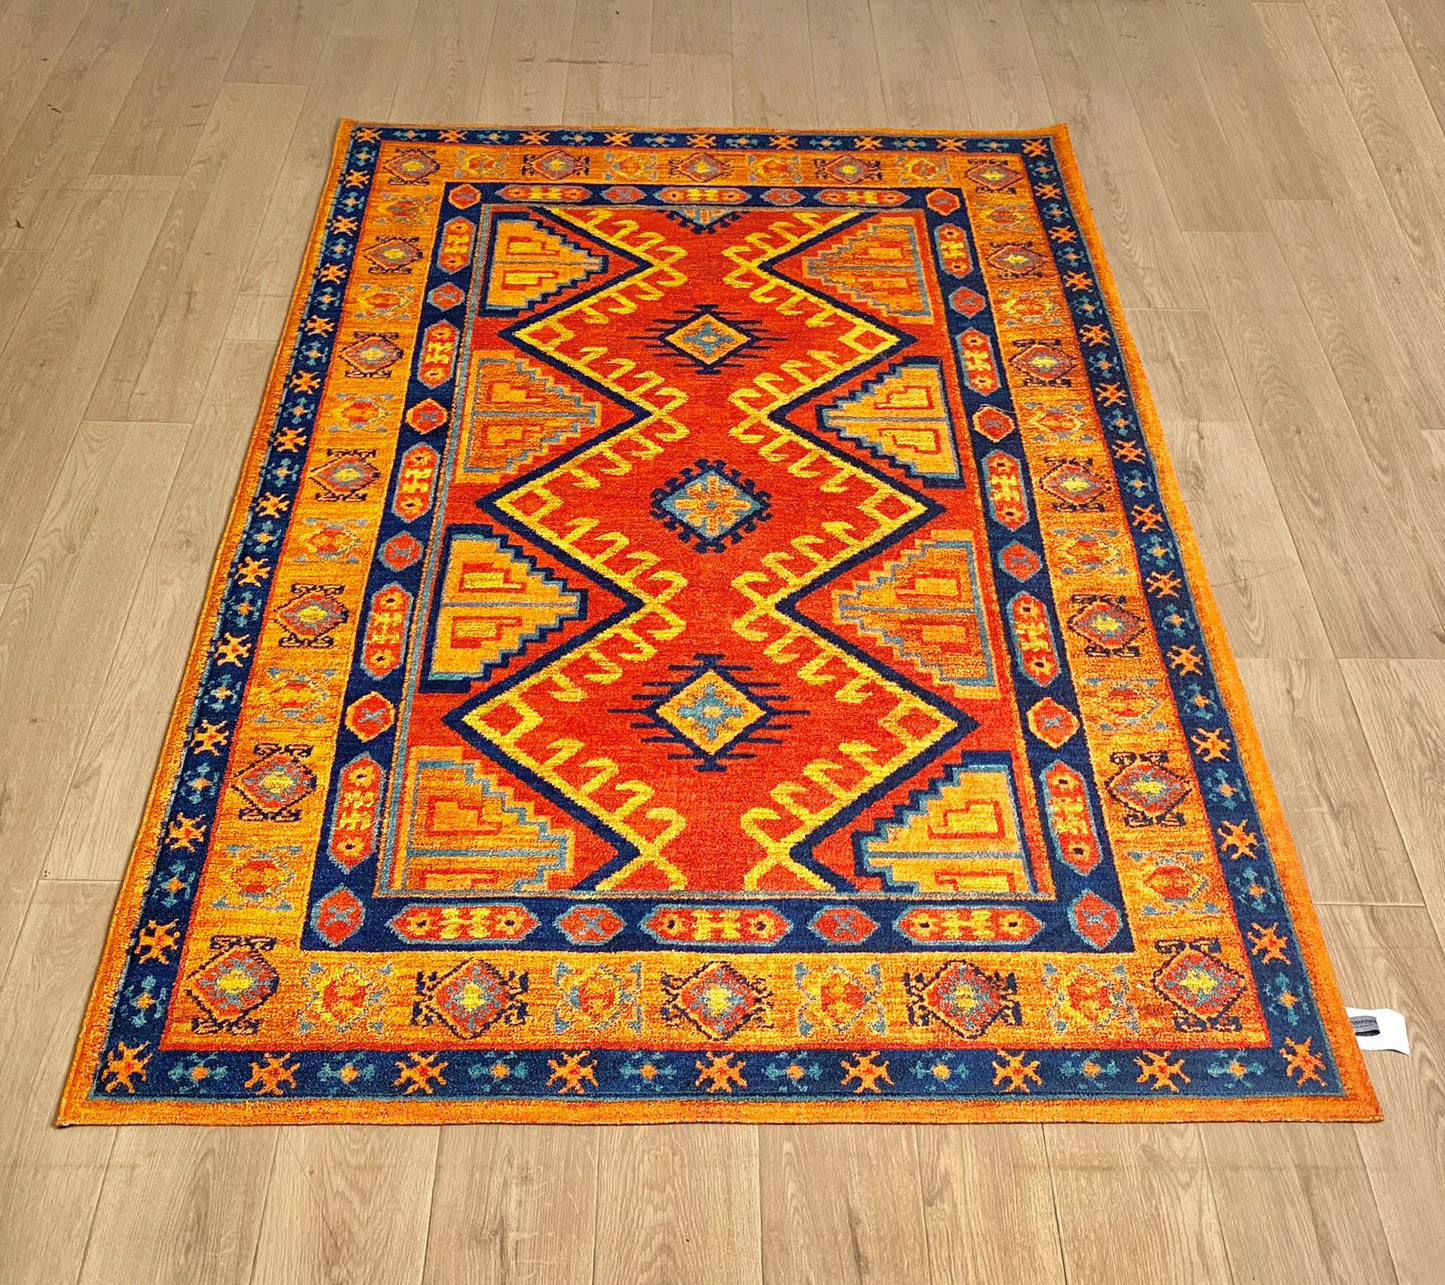 Karpet Bohemian (OR-B-0030) - Orange,Blue